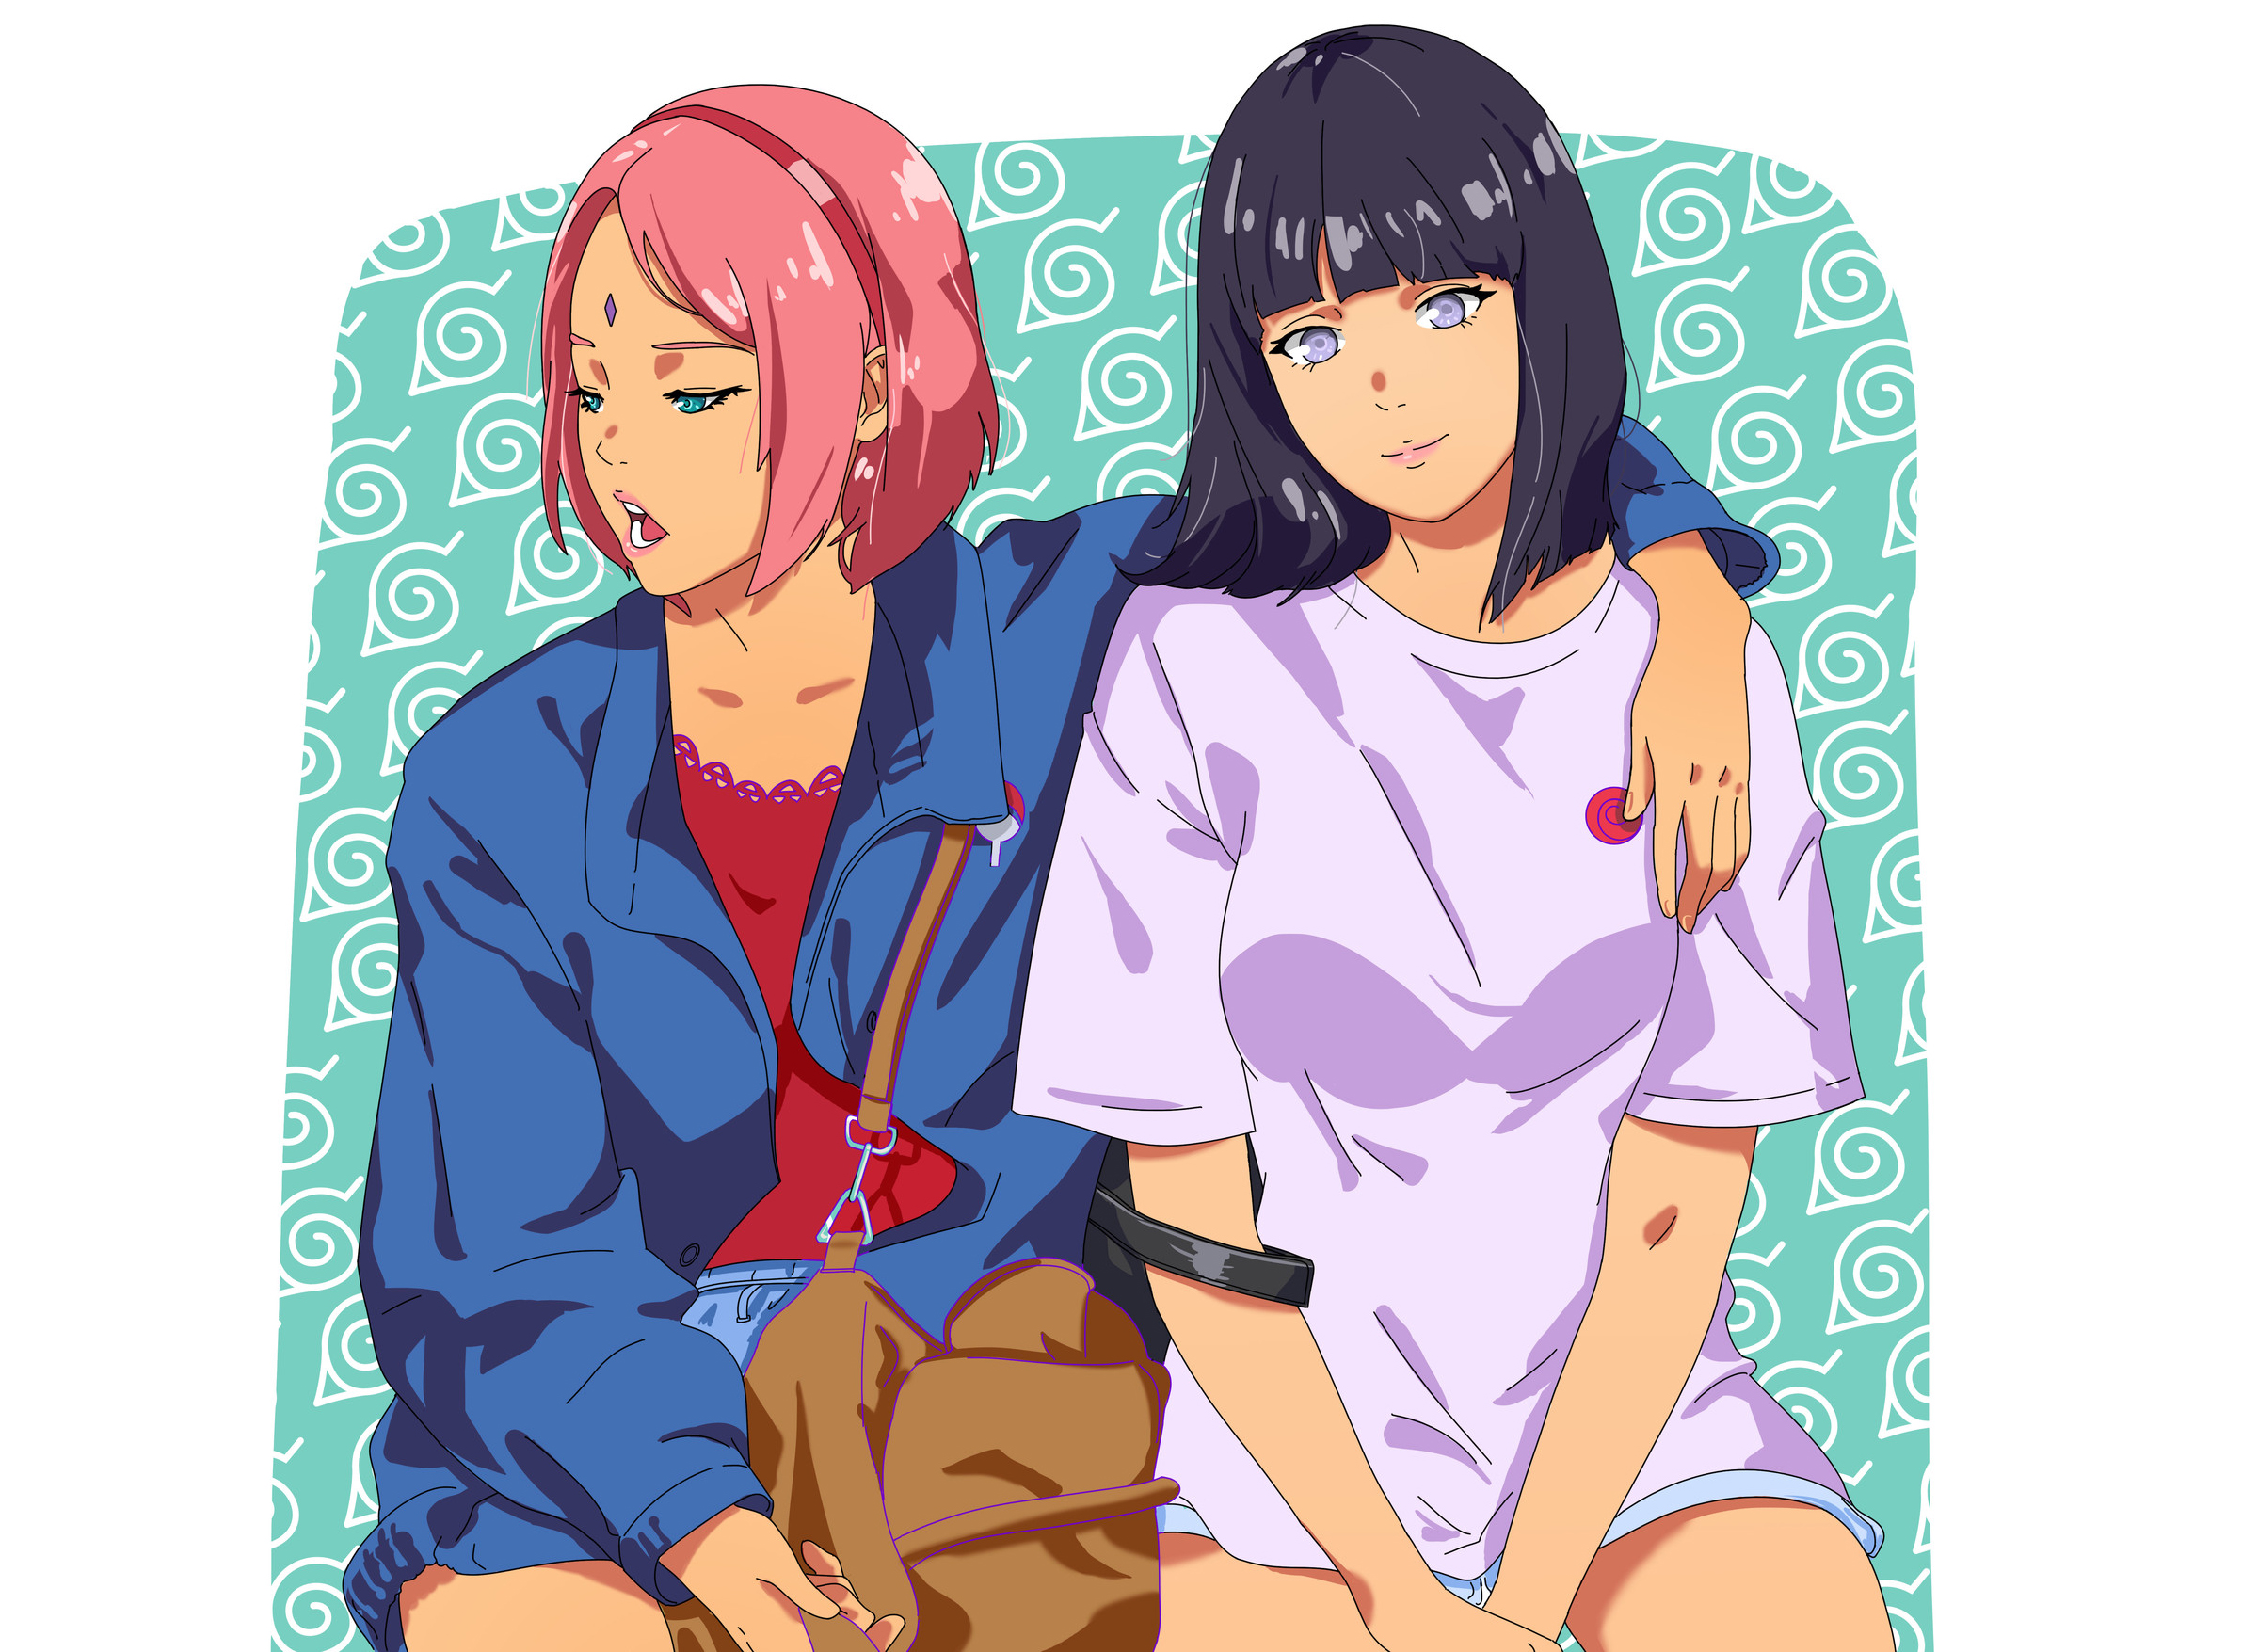 Sakura and Hinata by Godstime Ojinmah